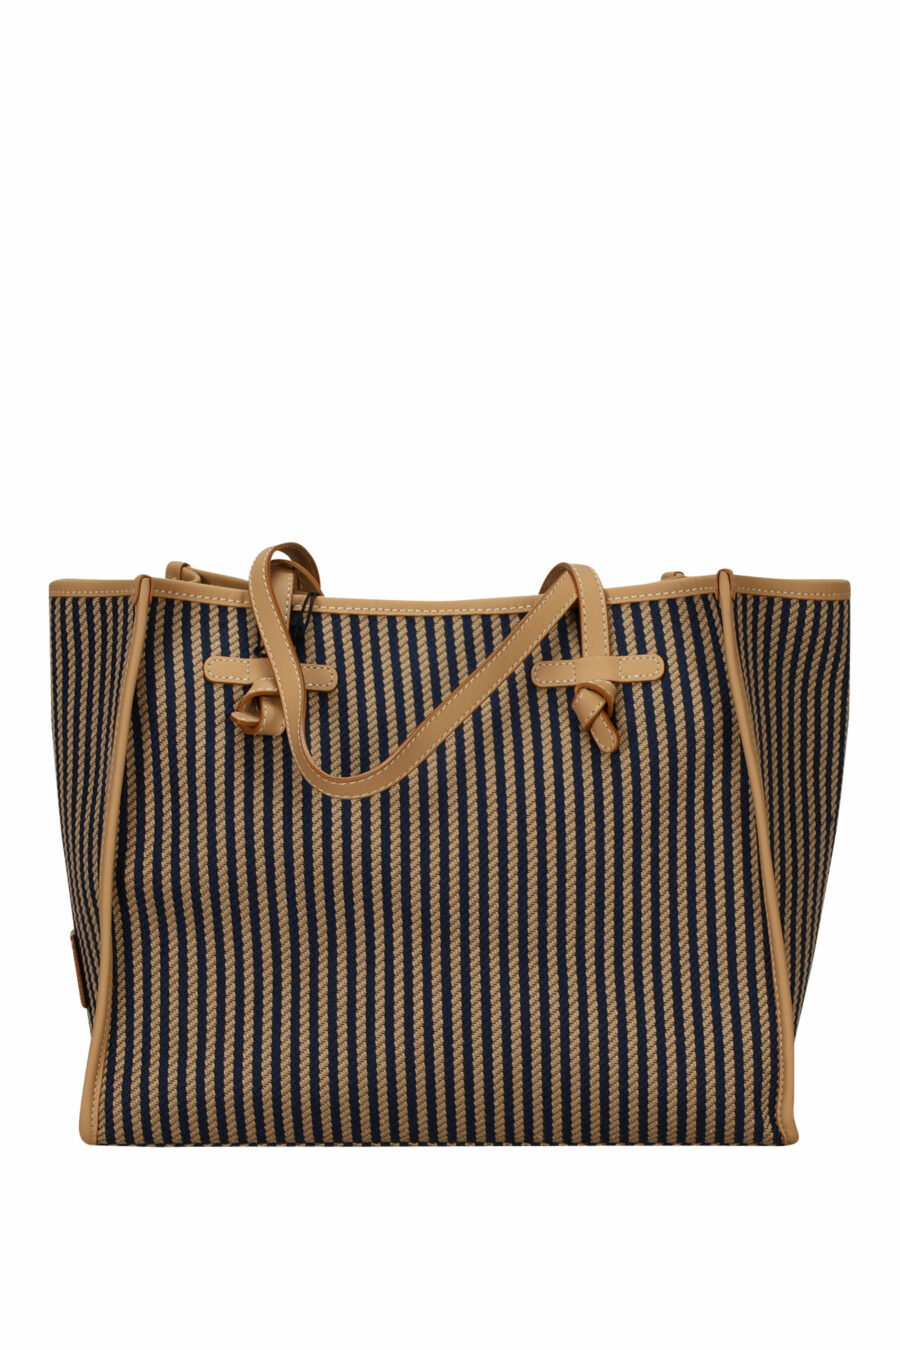 Shopper Tasche "Marcella" braun mit dunkelblauen Linien und Minilogo - 8057145894331 2